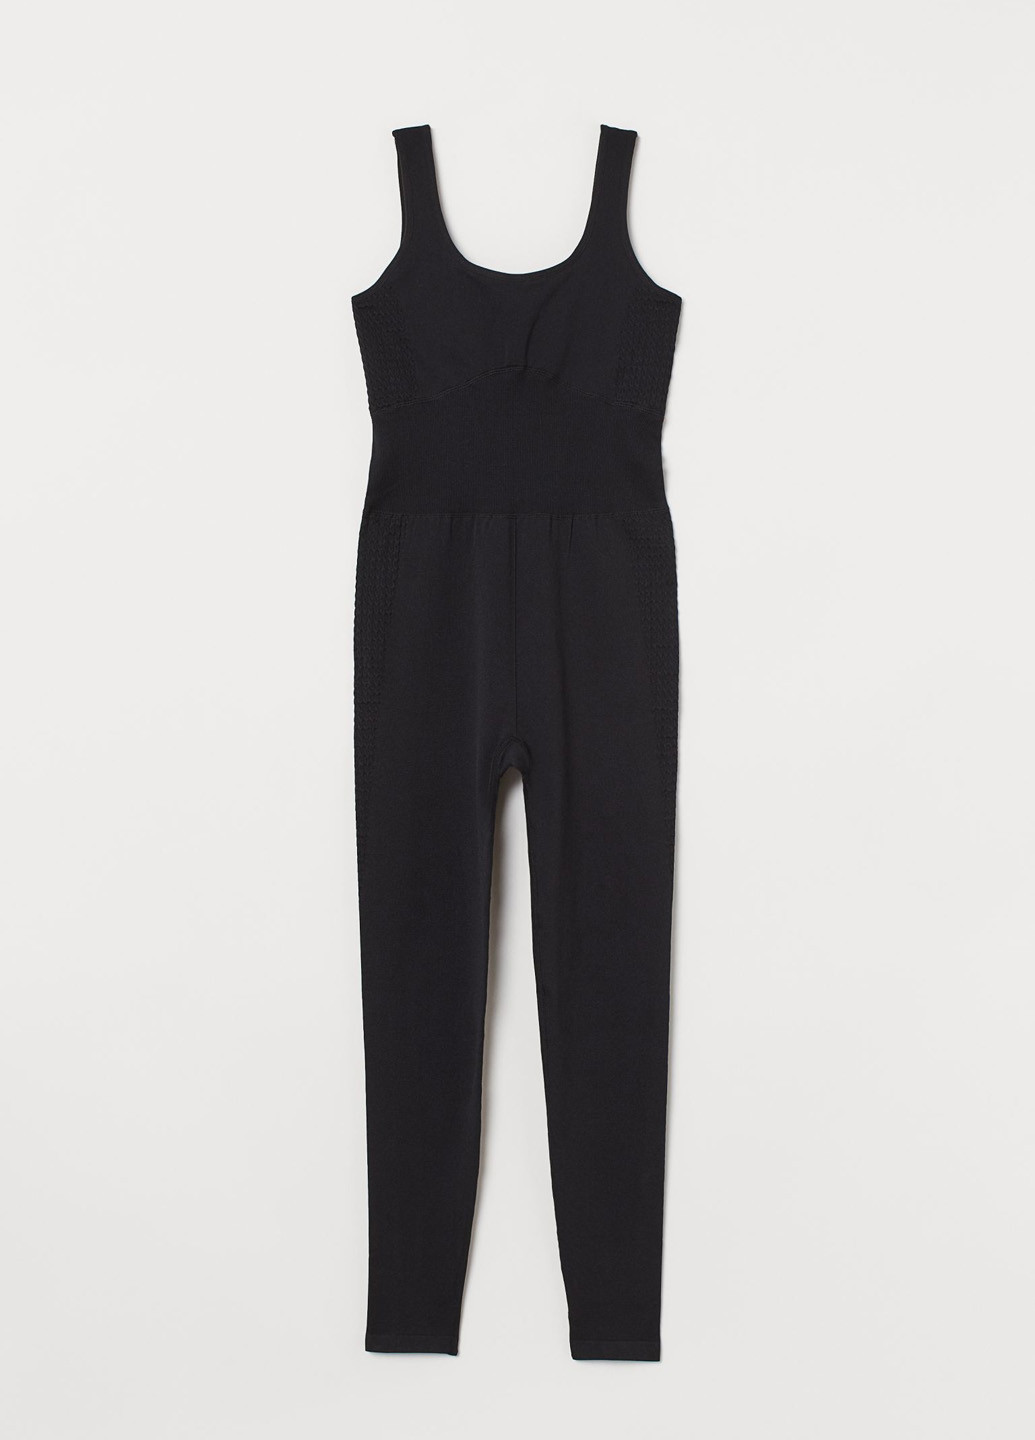 Комбінезон H&M комбінезон-брюки однотонний чорний спортивний поліамід, трикотаж